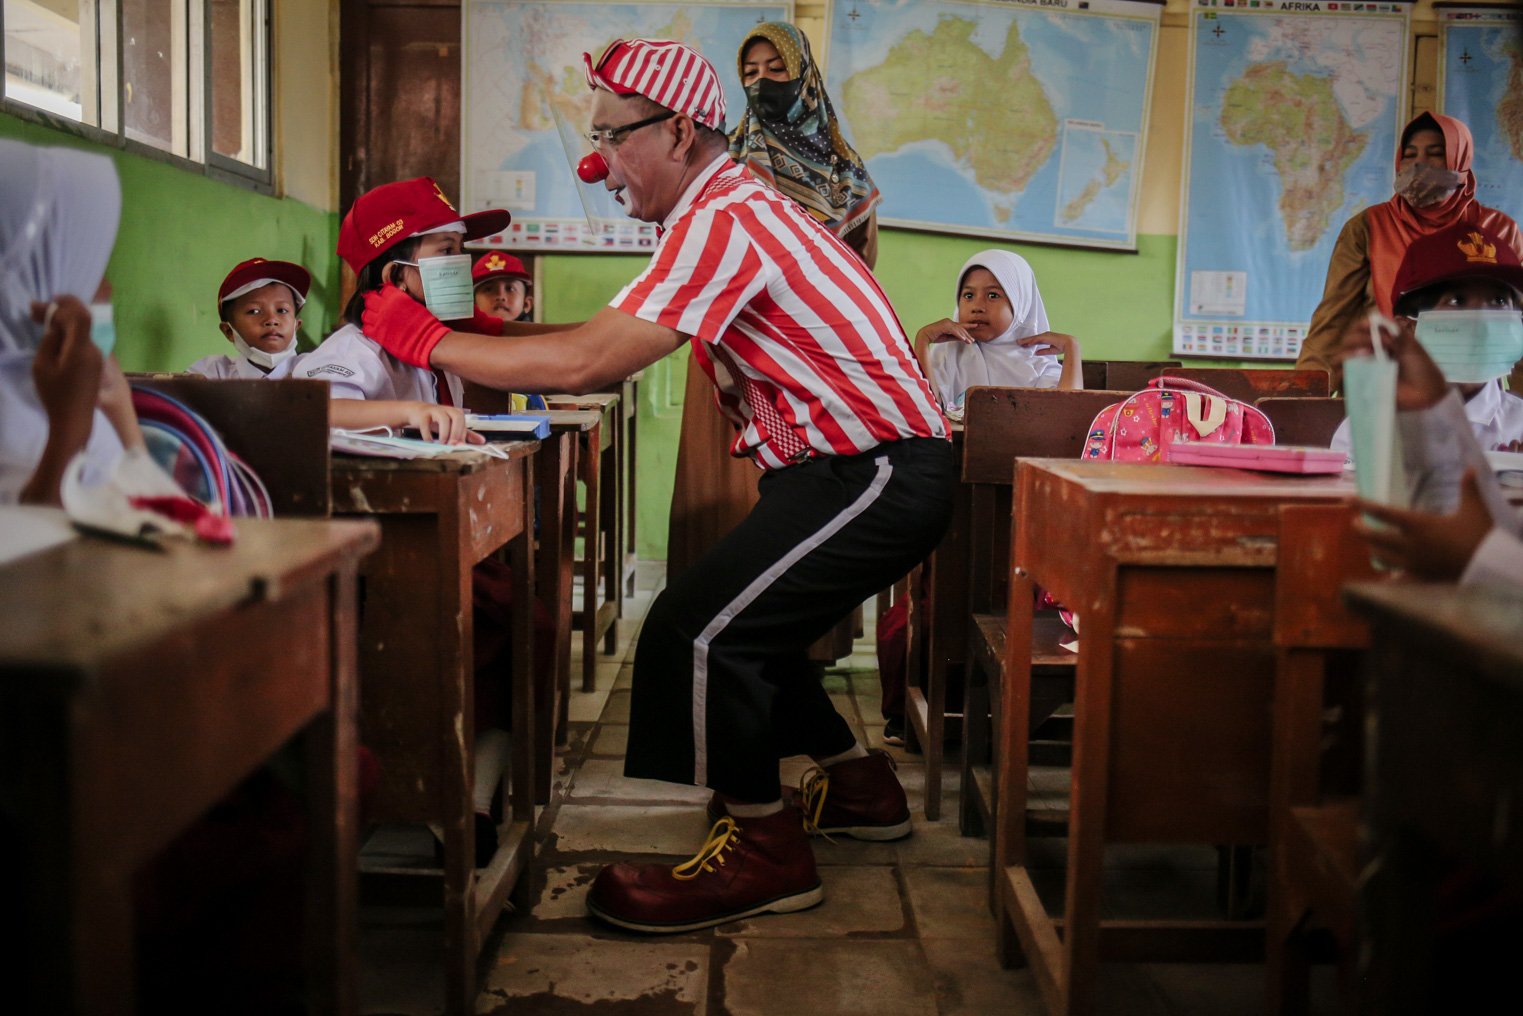 Seniman Aku Badut Indonesia (ABI) memasangkan masker kepada siswa di SDN 03 Citayam, Kabupaten Bogor, Jawa Barat, Senin (6/9/2021). Kegiatan aksi kampanye tersebut tentang protokol kesehatan serta membagikan masker kepada anak-anak sekolah yang menggelar Pembelajaran Tatap Muka (PTM)